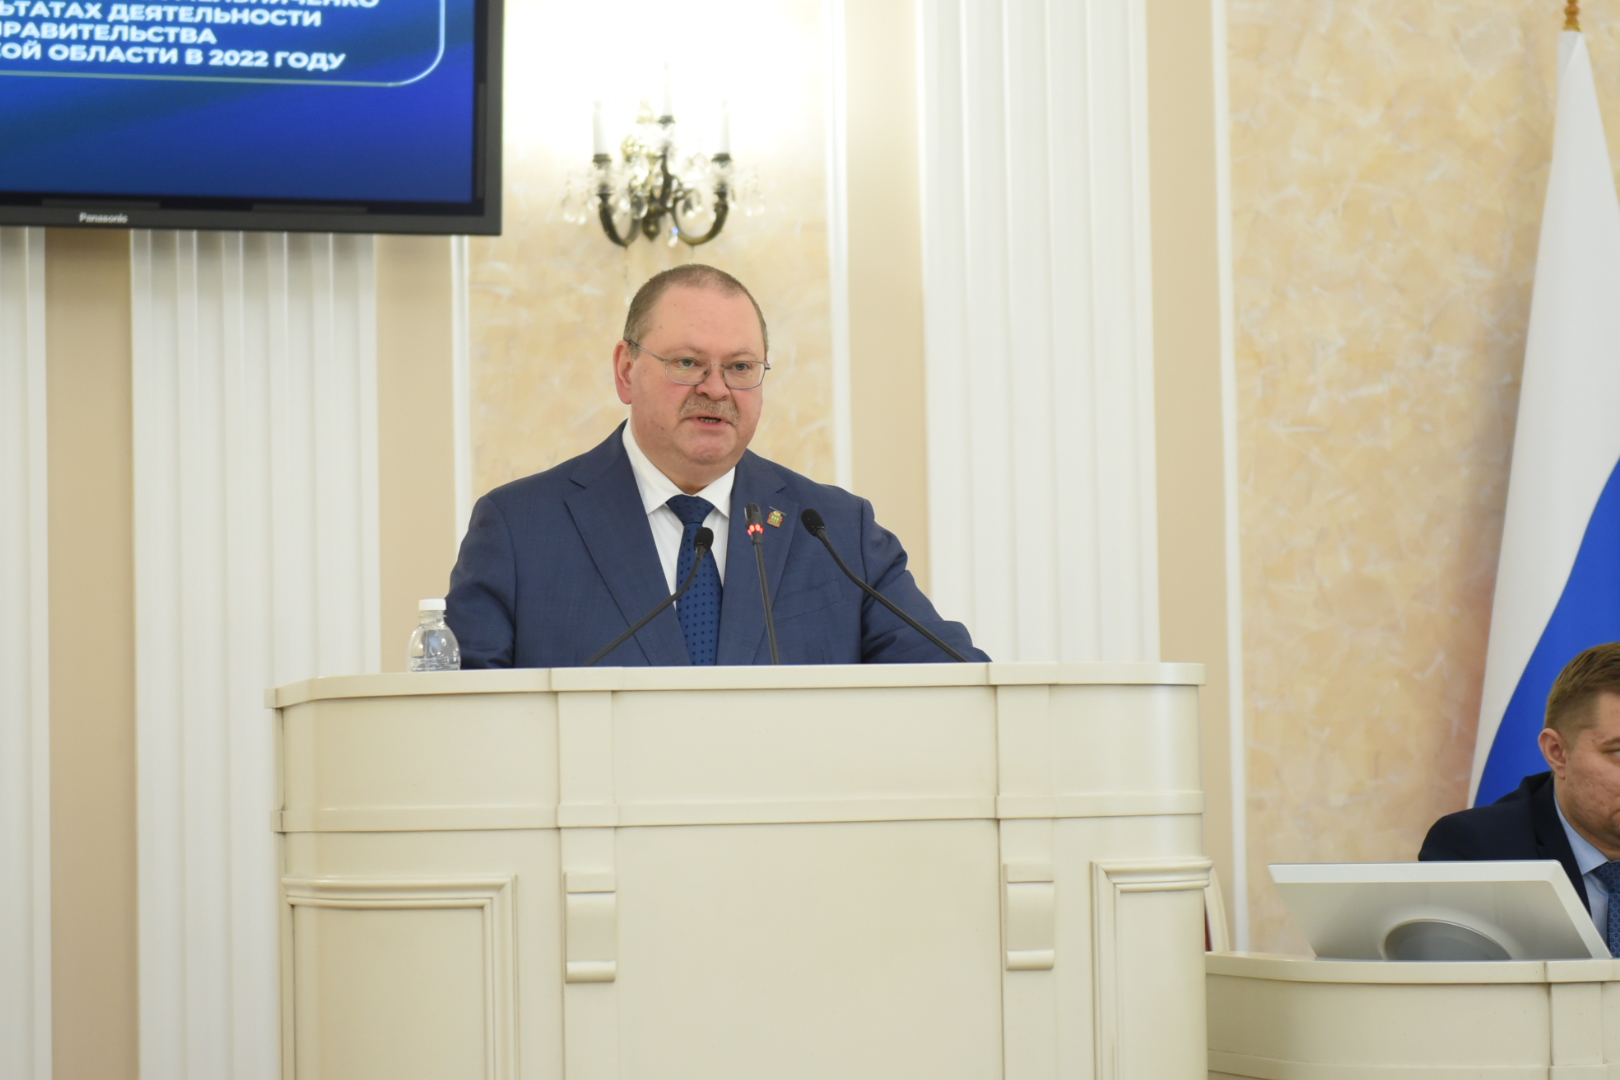 Олег Мельниченко: «В этом году мы планируем четыре зарубежных бизнес-миссии: в Узбекистан, Казахстан, Китай и Иран»